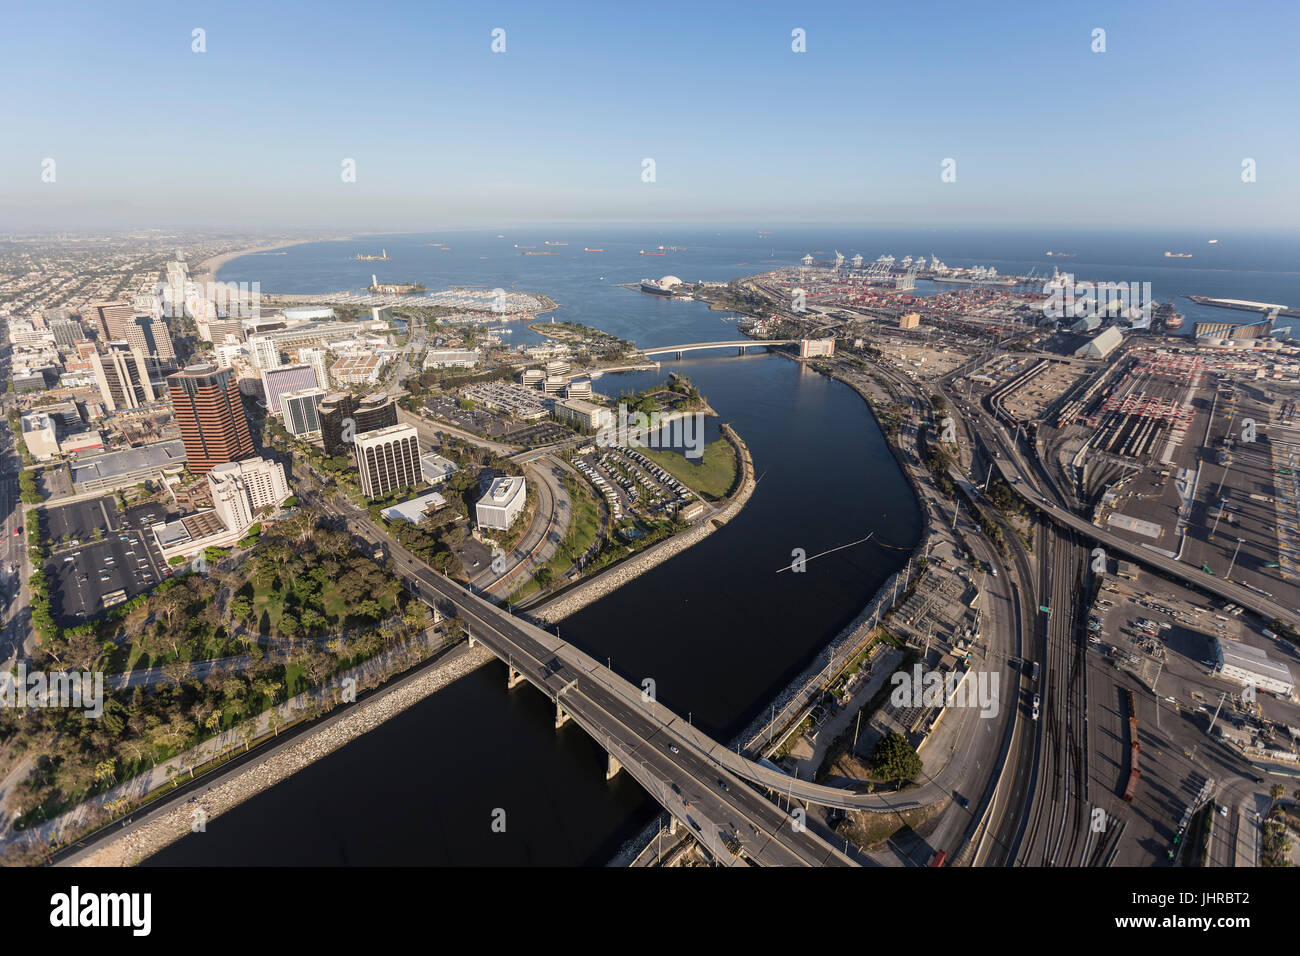 Vista aerea di strade, edifici, strutture portuali e la fine del fiume di Los Angeles nel centro cittadino di Long Beach in California. Foto Stock